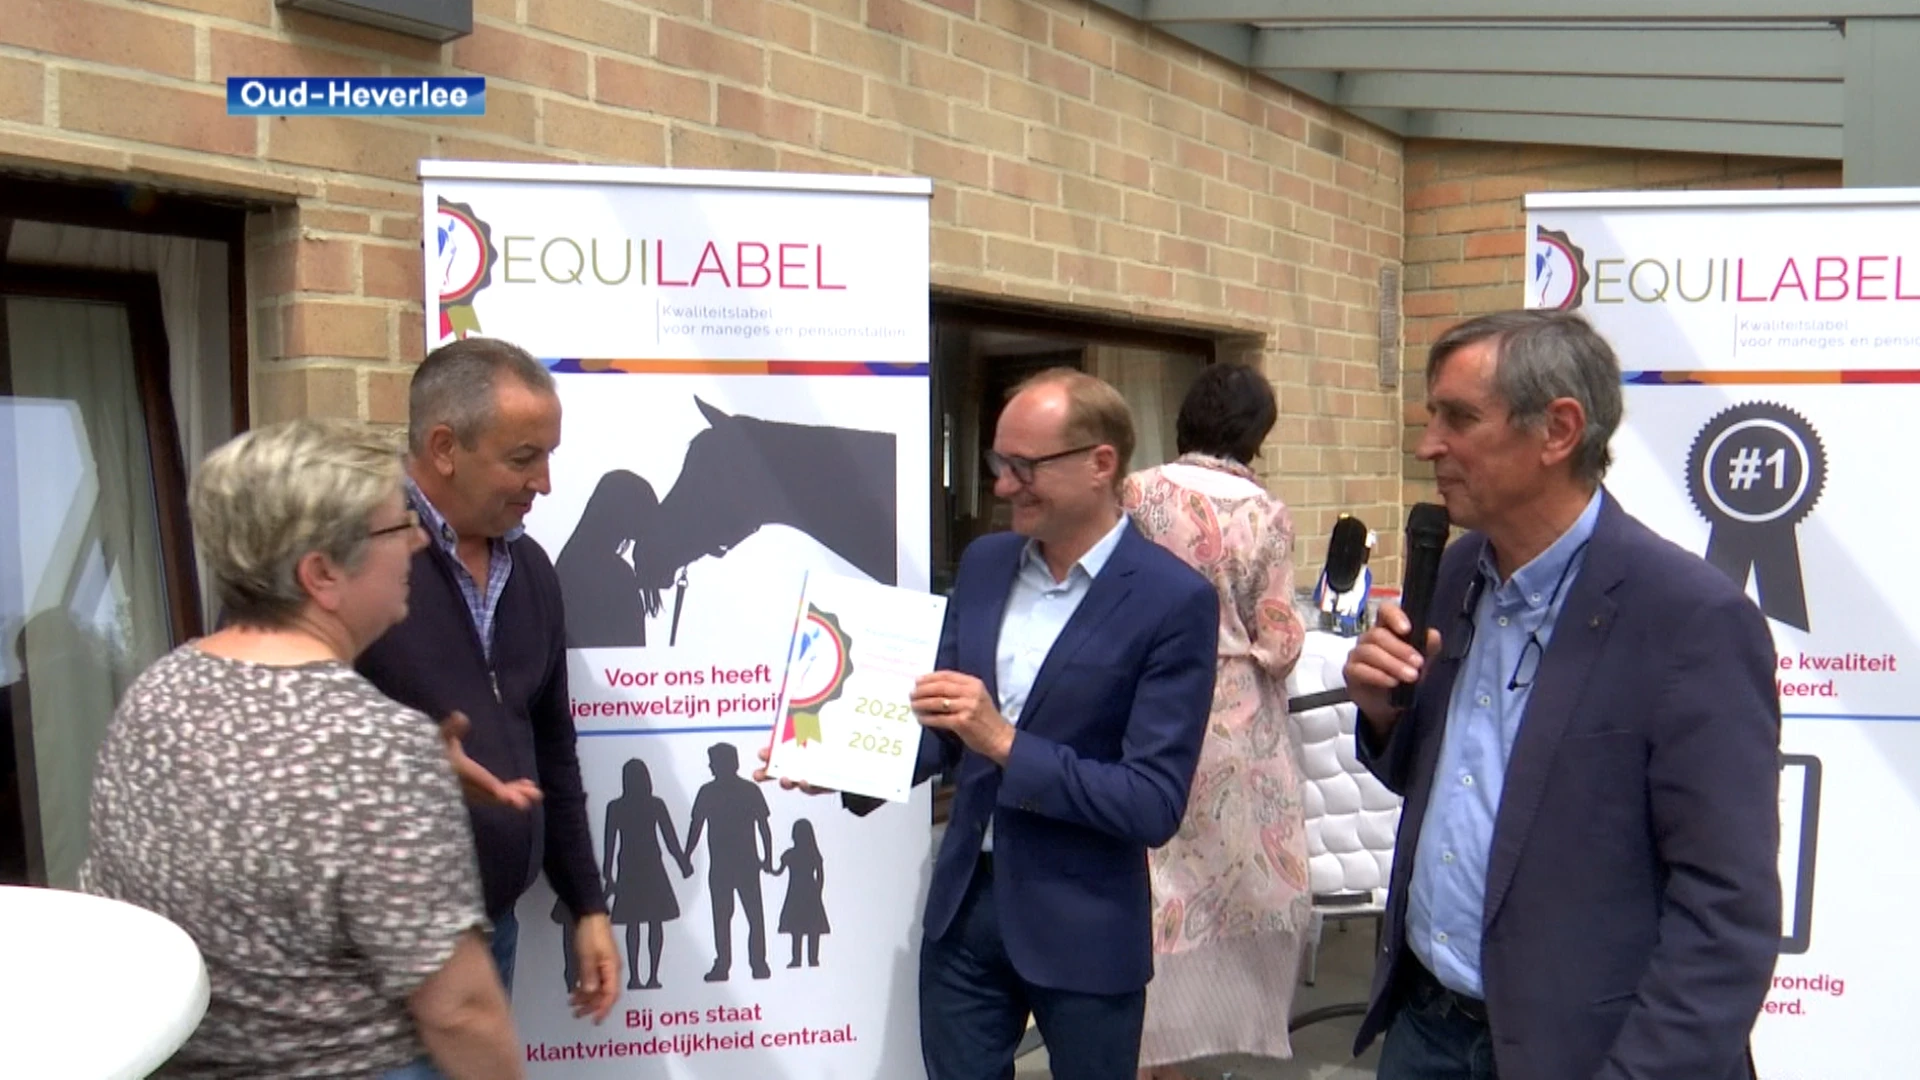 Manege Meerdaalhof in Oud-Heverlee krijgt als eerste vernieuwd "Equilabel", minister Weyts: "Paardenwelzijn staat voorop"